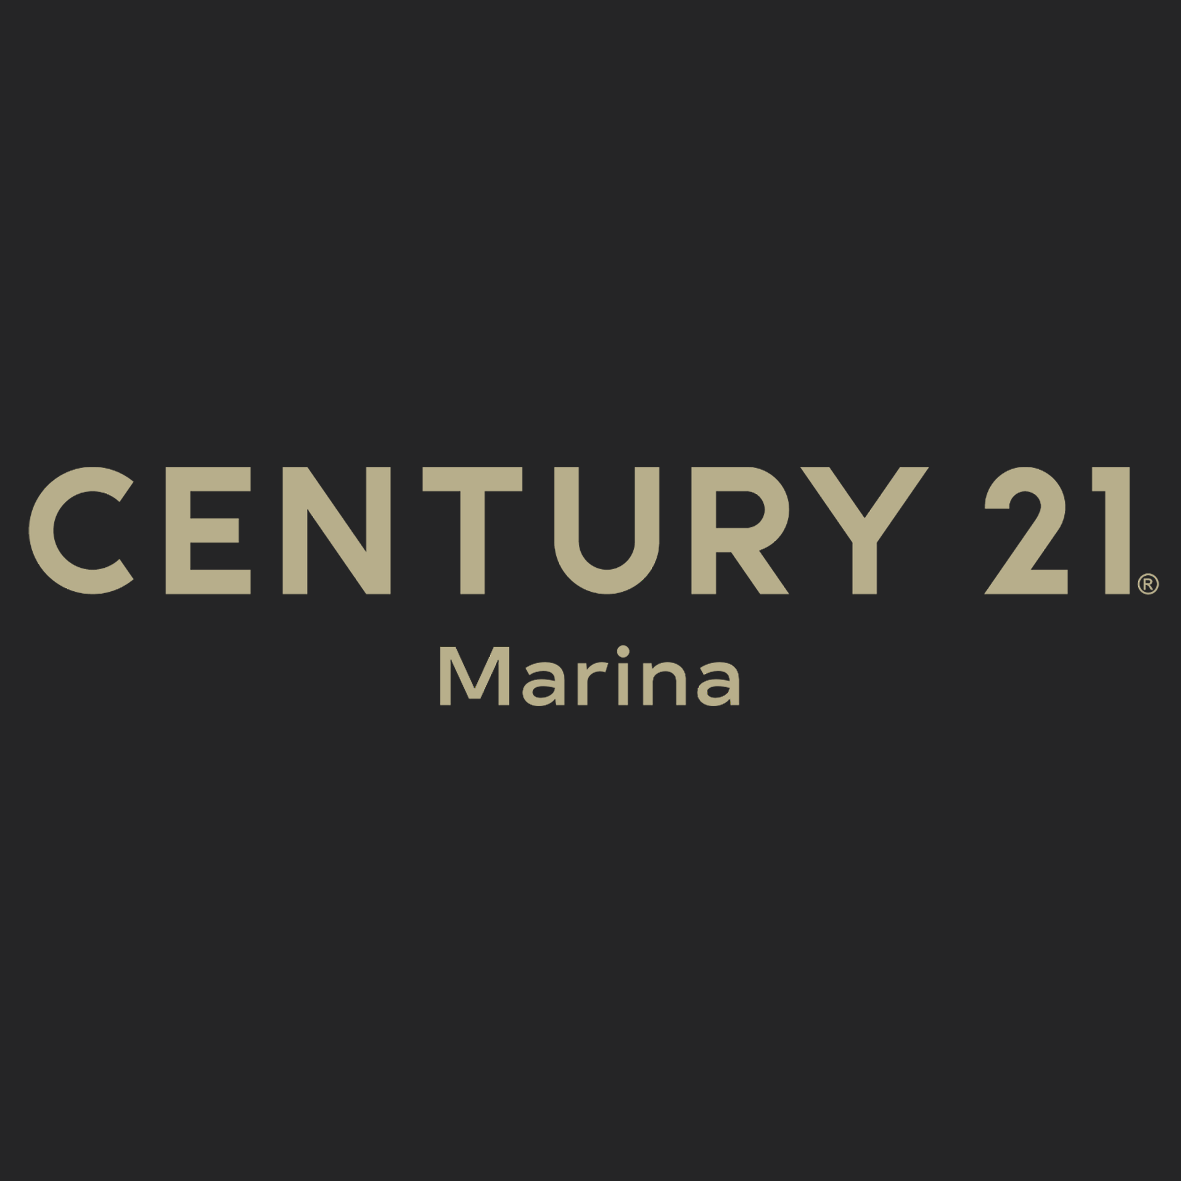 Century 21 Marina